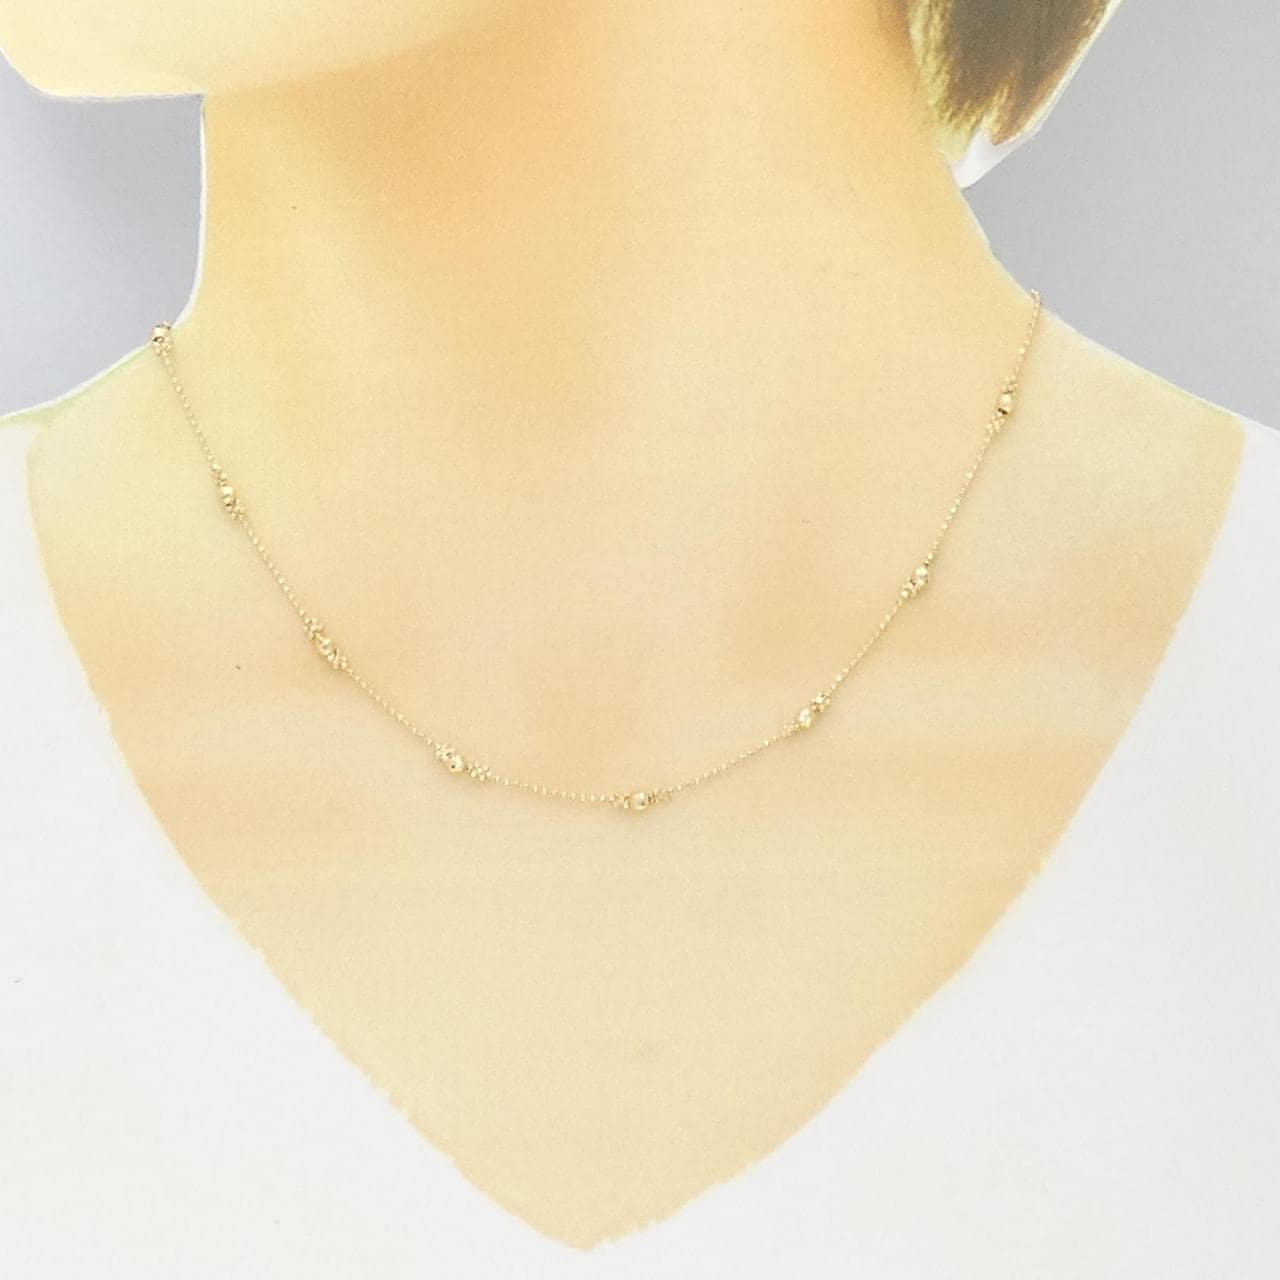 K18YG necklace